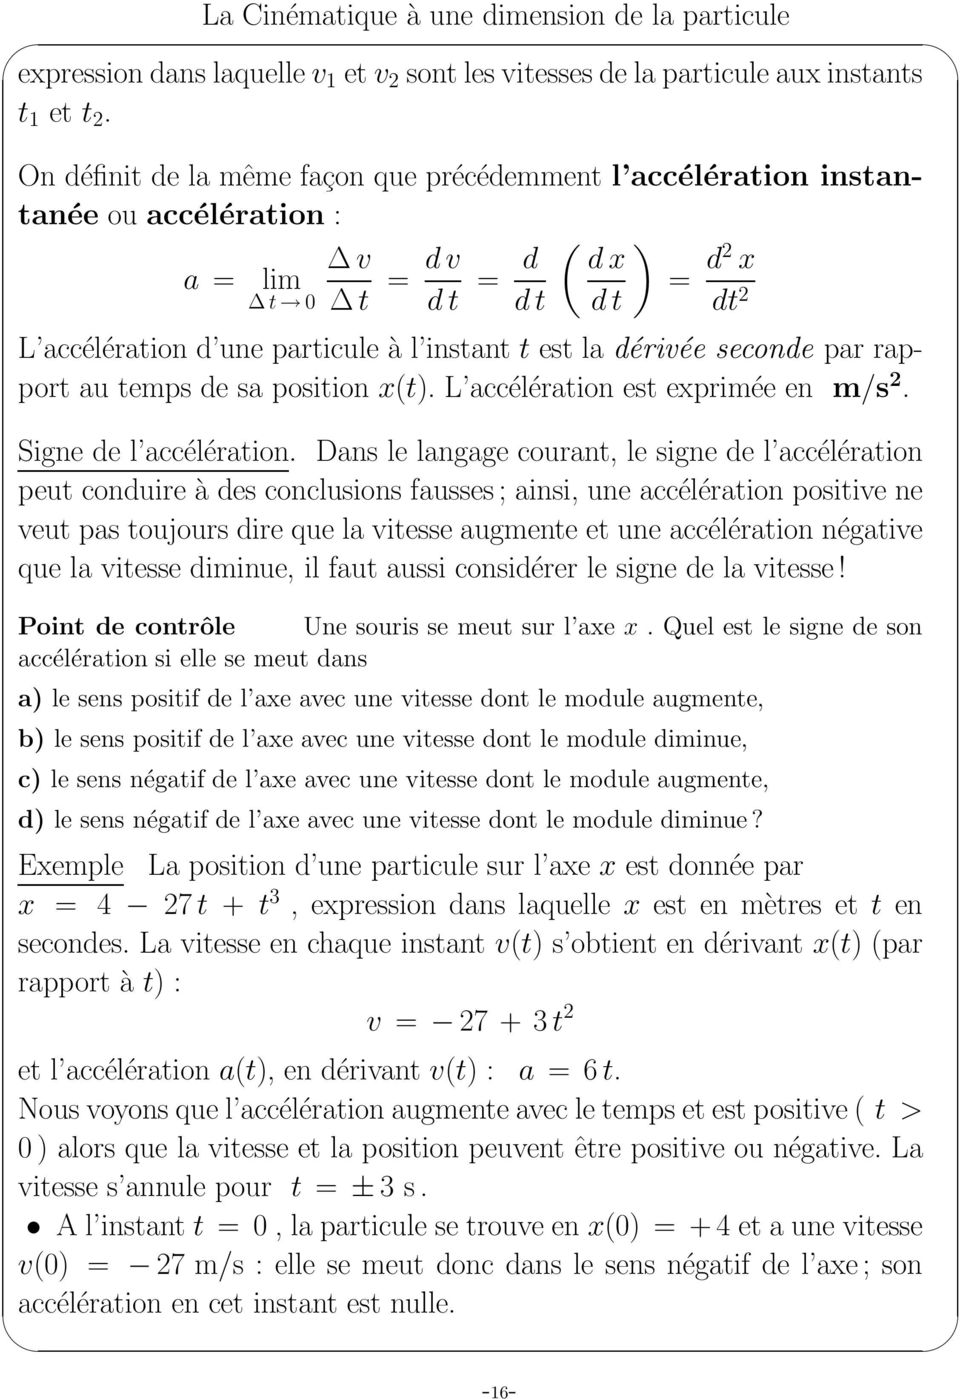 seconde pr rpport u temps de s position x(t). L ccélértion est exprimée en m/s 2. Signe de l ccélértion.